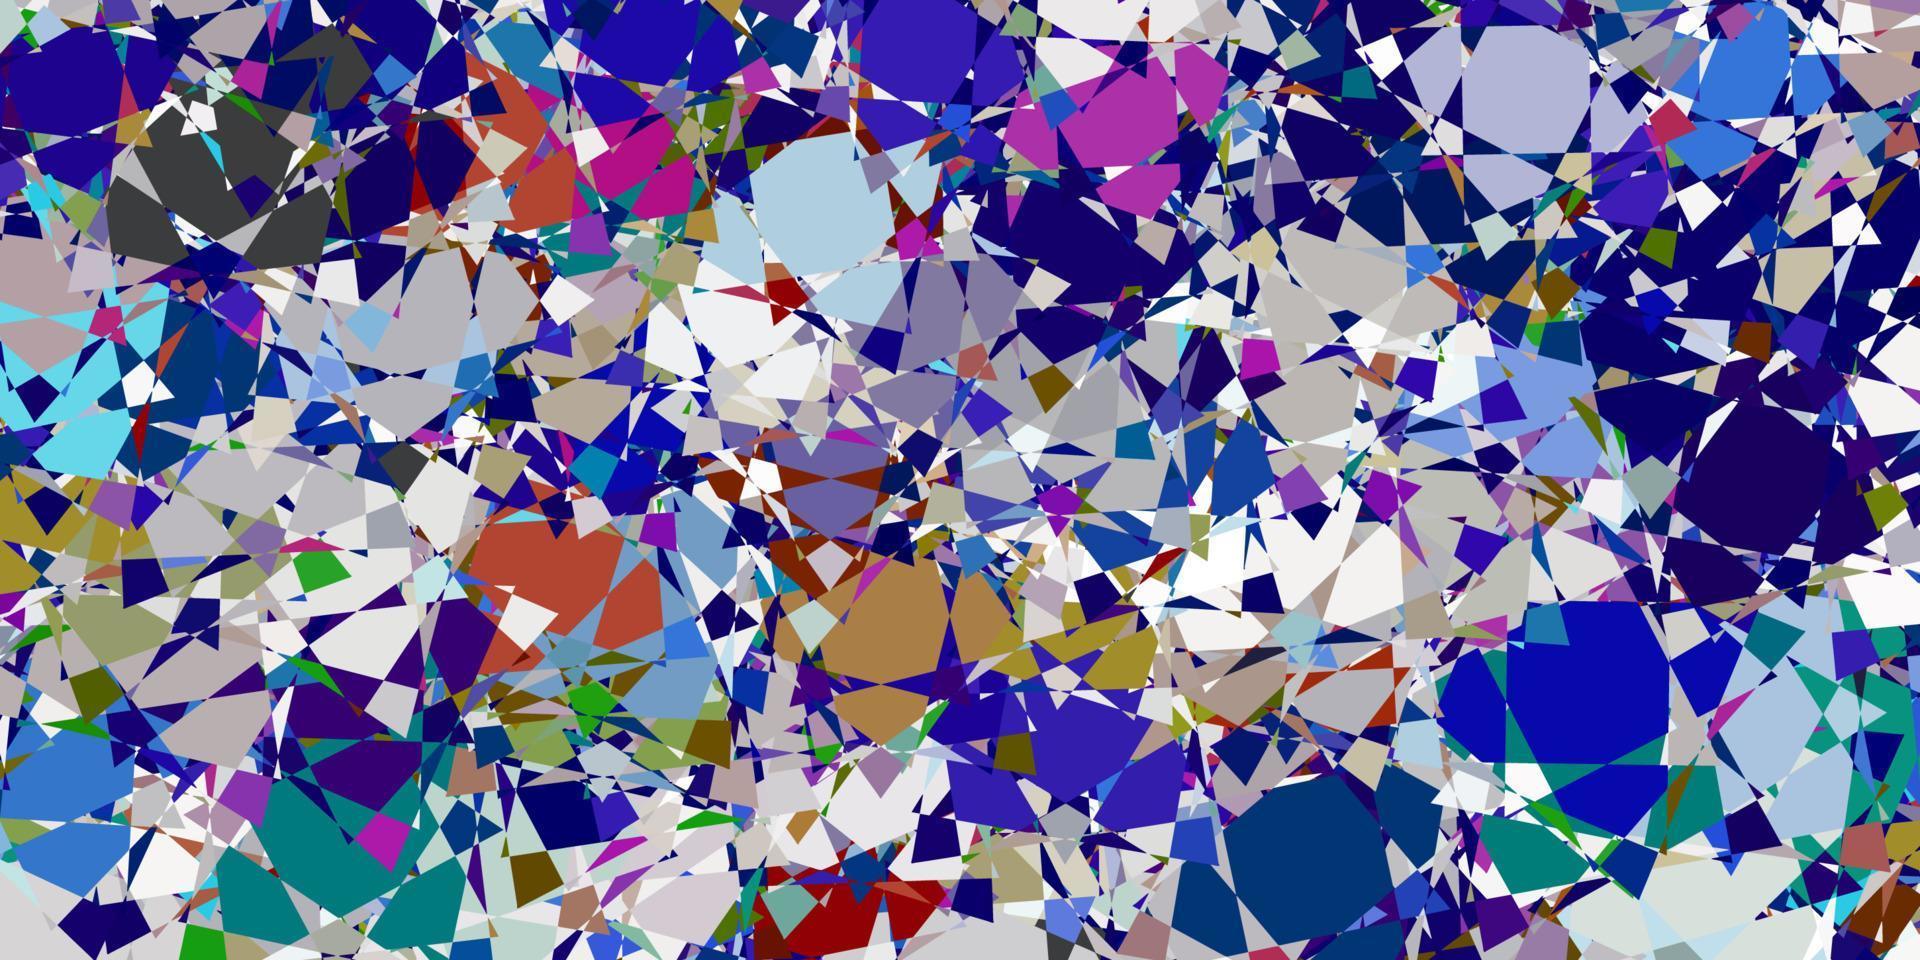 modello vettoriale multicolore chiaro con forme poligonali.